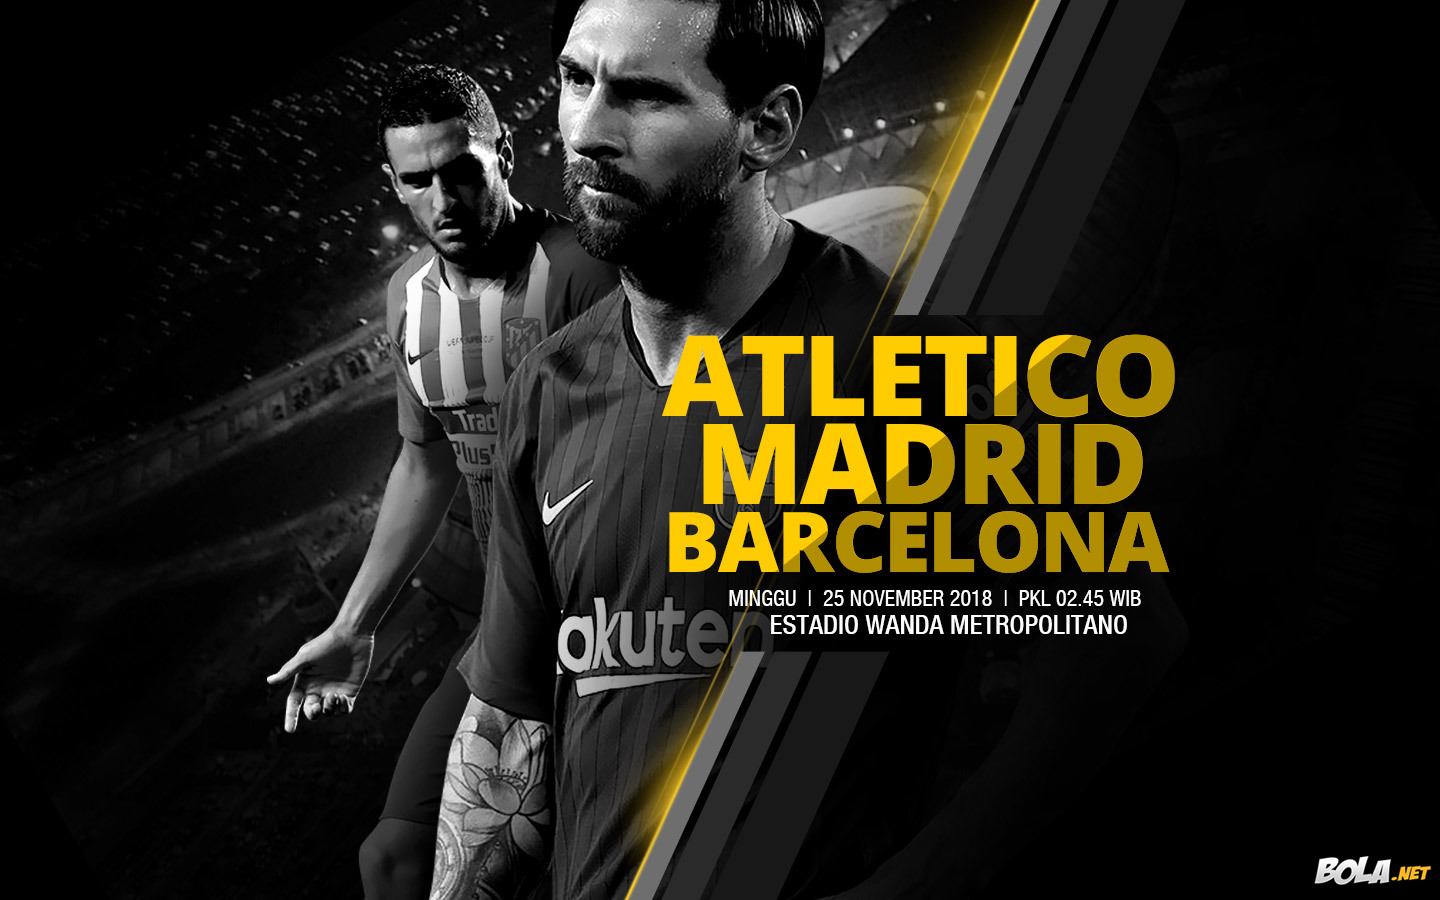 Deskripsi : Wallpaper Atletico Madrid Vs Barcelona, size: 1440x900